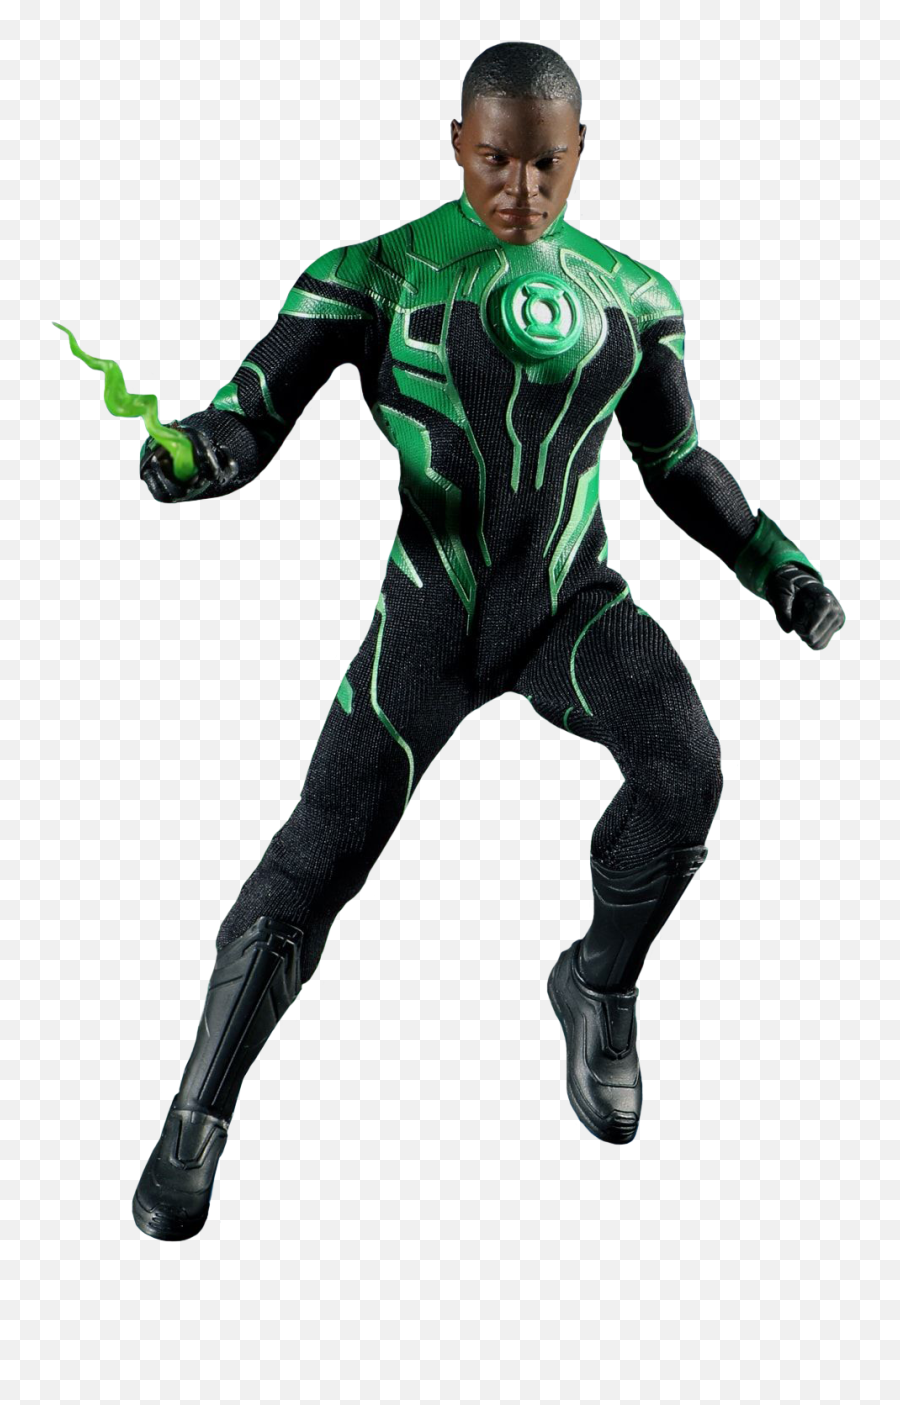 12 - Green Lantern John Stewart Png,Green Lantern Transparent